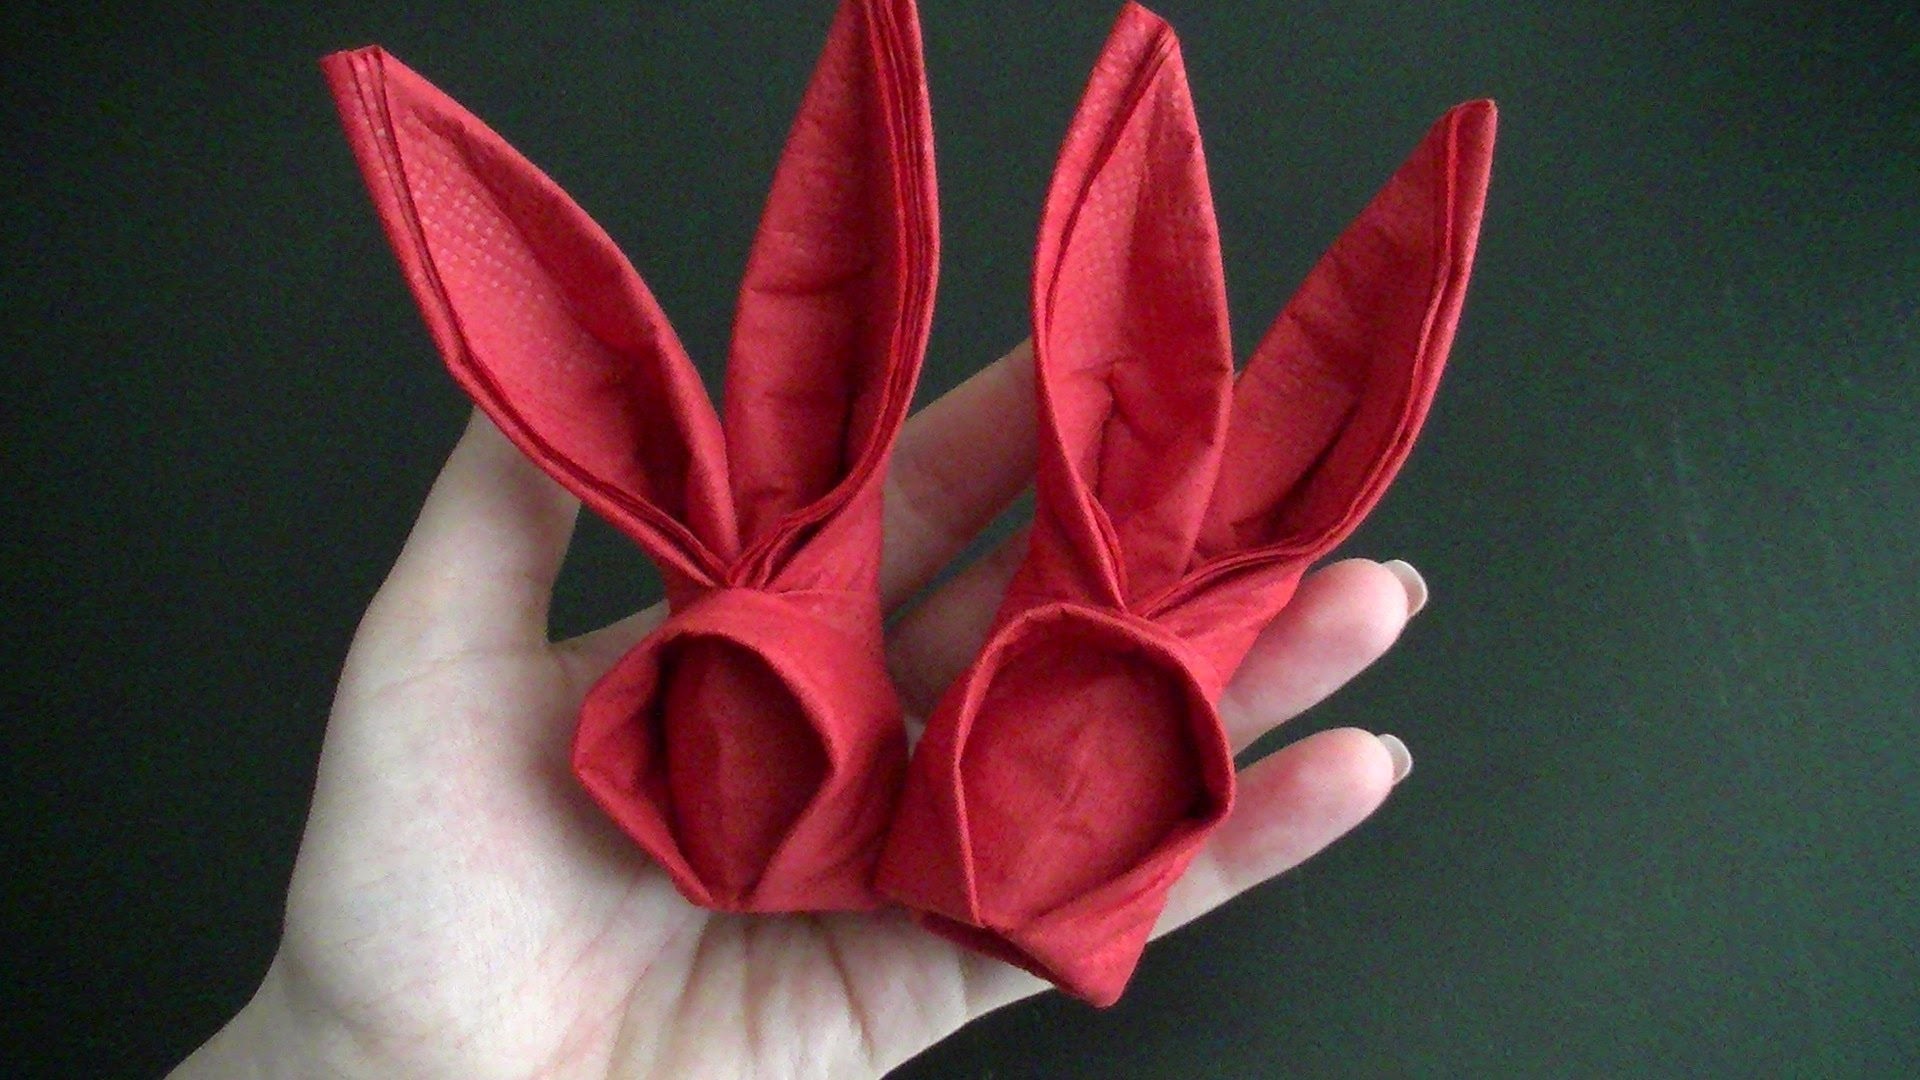 Origami Hase aus Servietten zu Ostern - sehr schnell gemacht - Freude für Kinder :-)